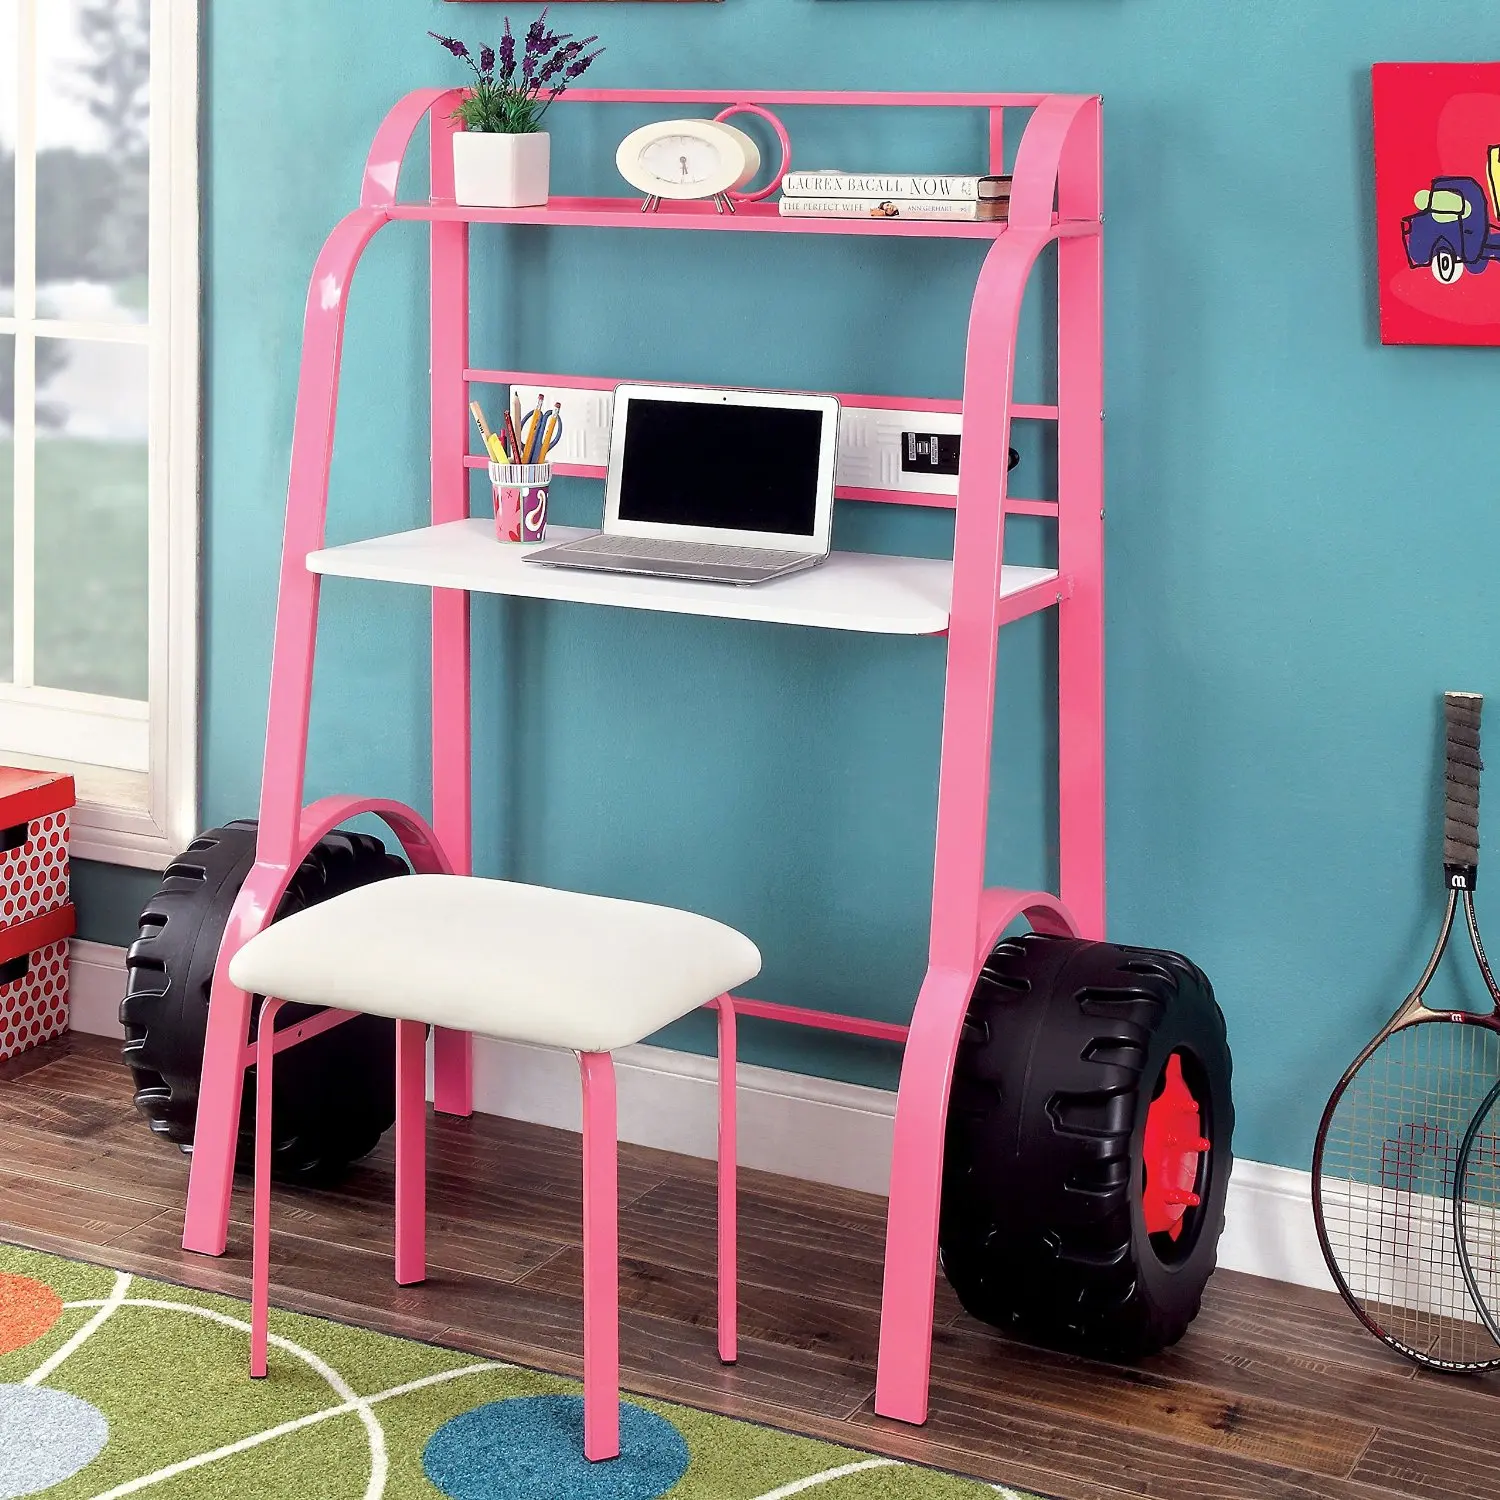 Cheap Pink Kids Desk Find Pink Kids Desk Deals On Line At Alibaba Com